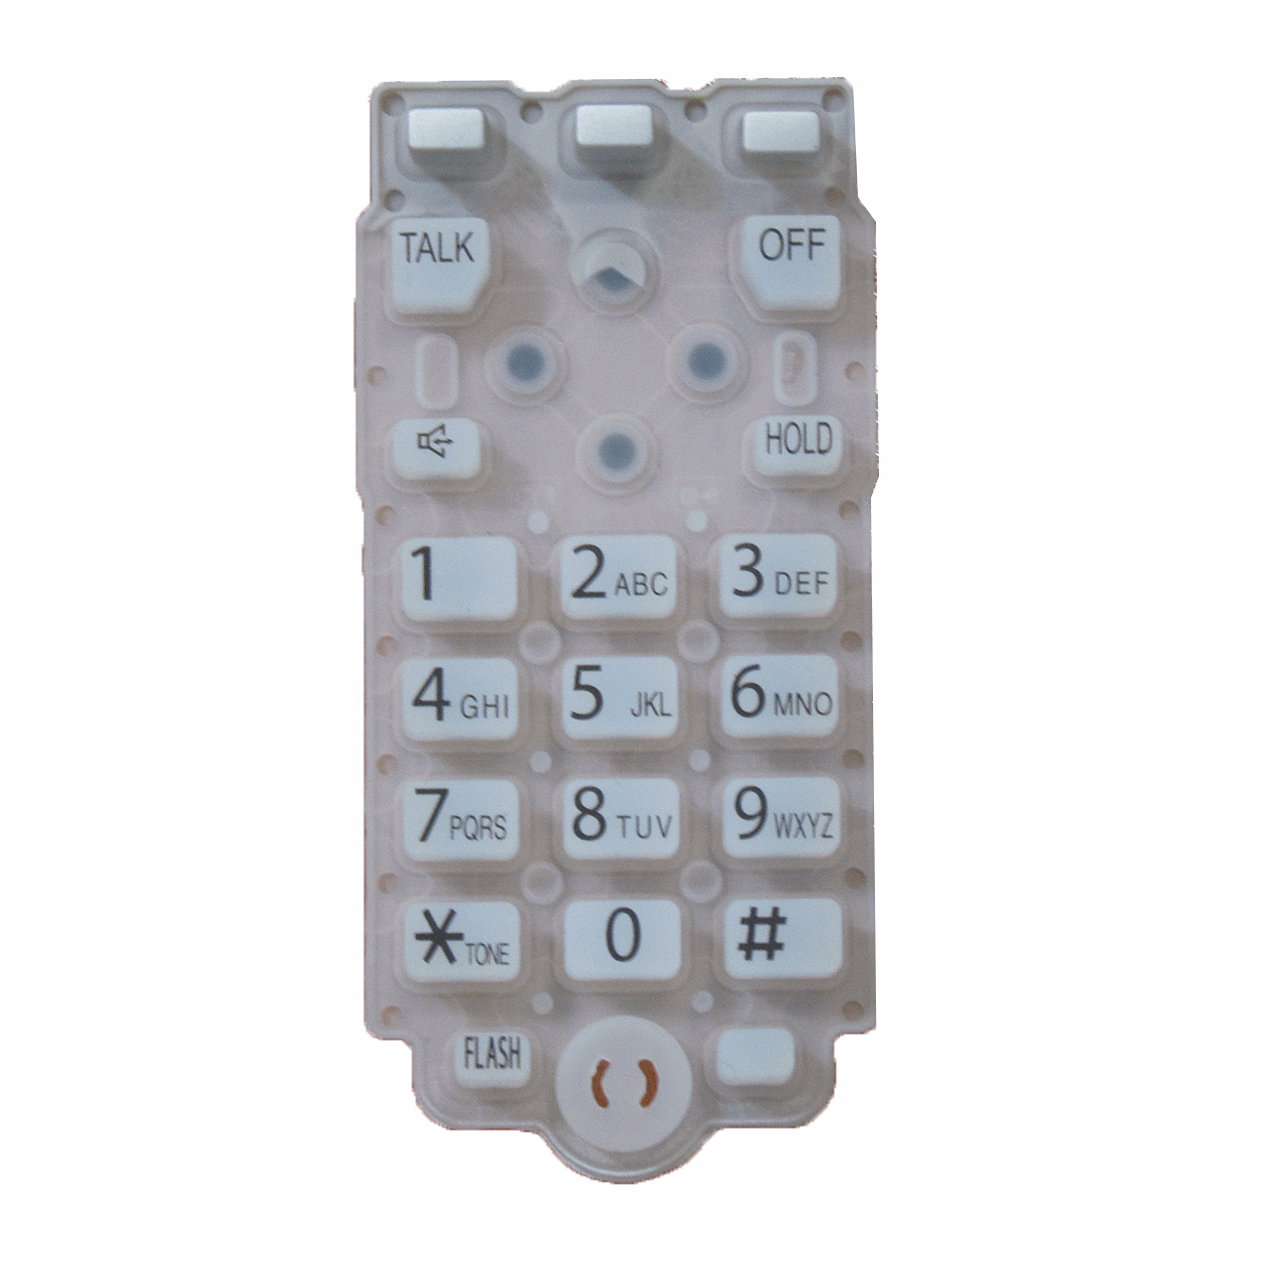 نقد و بررسی شماره گیر اس وای دی مدل 5771-2873 مناسب تلفن پاناسونیک توسط خریداران